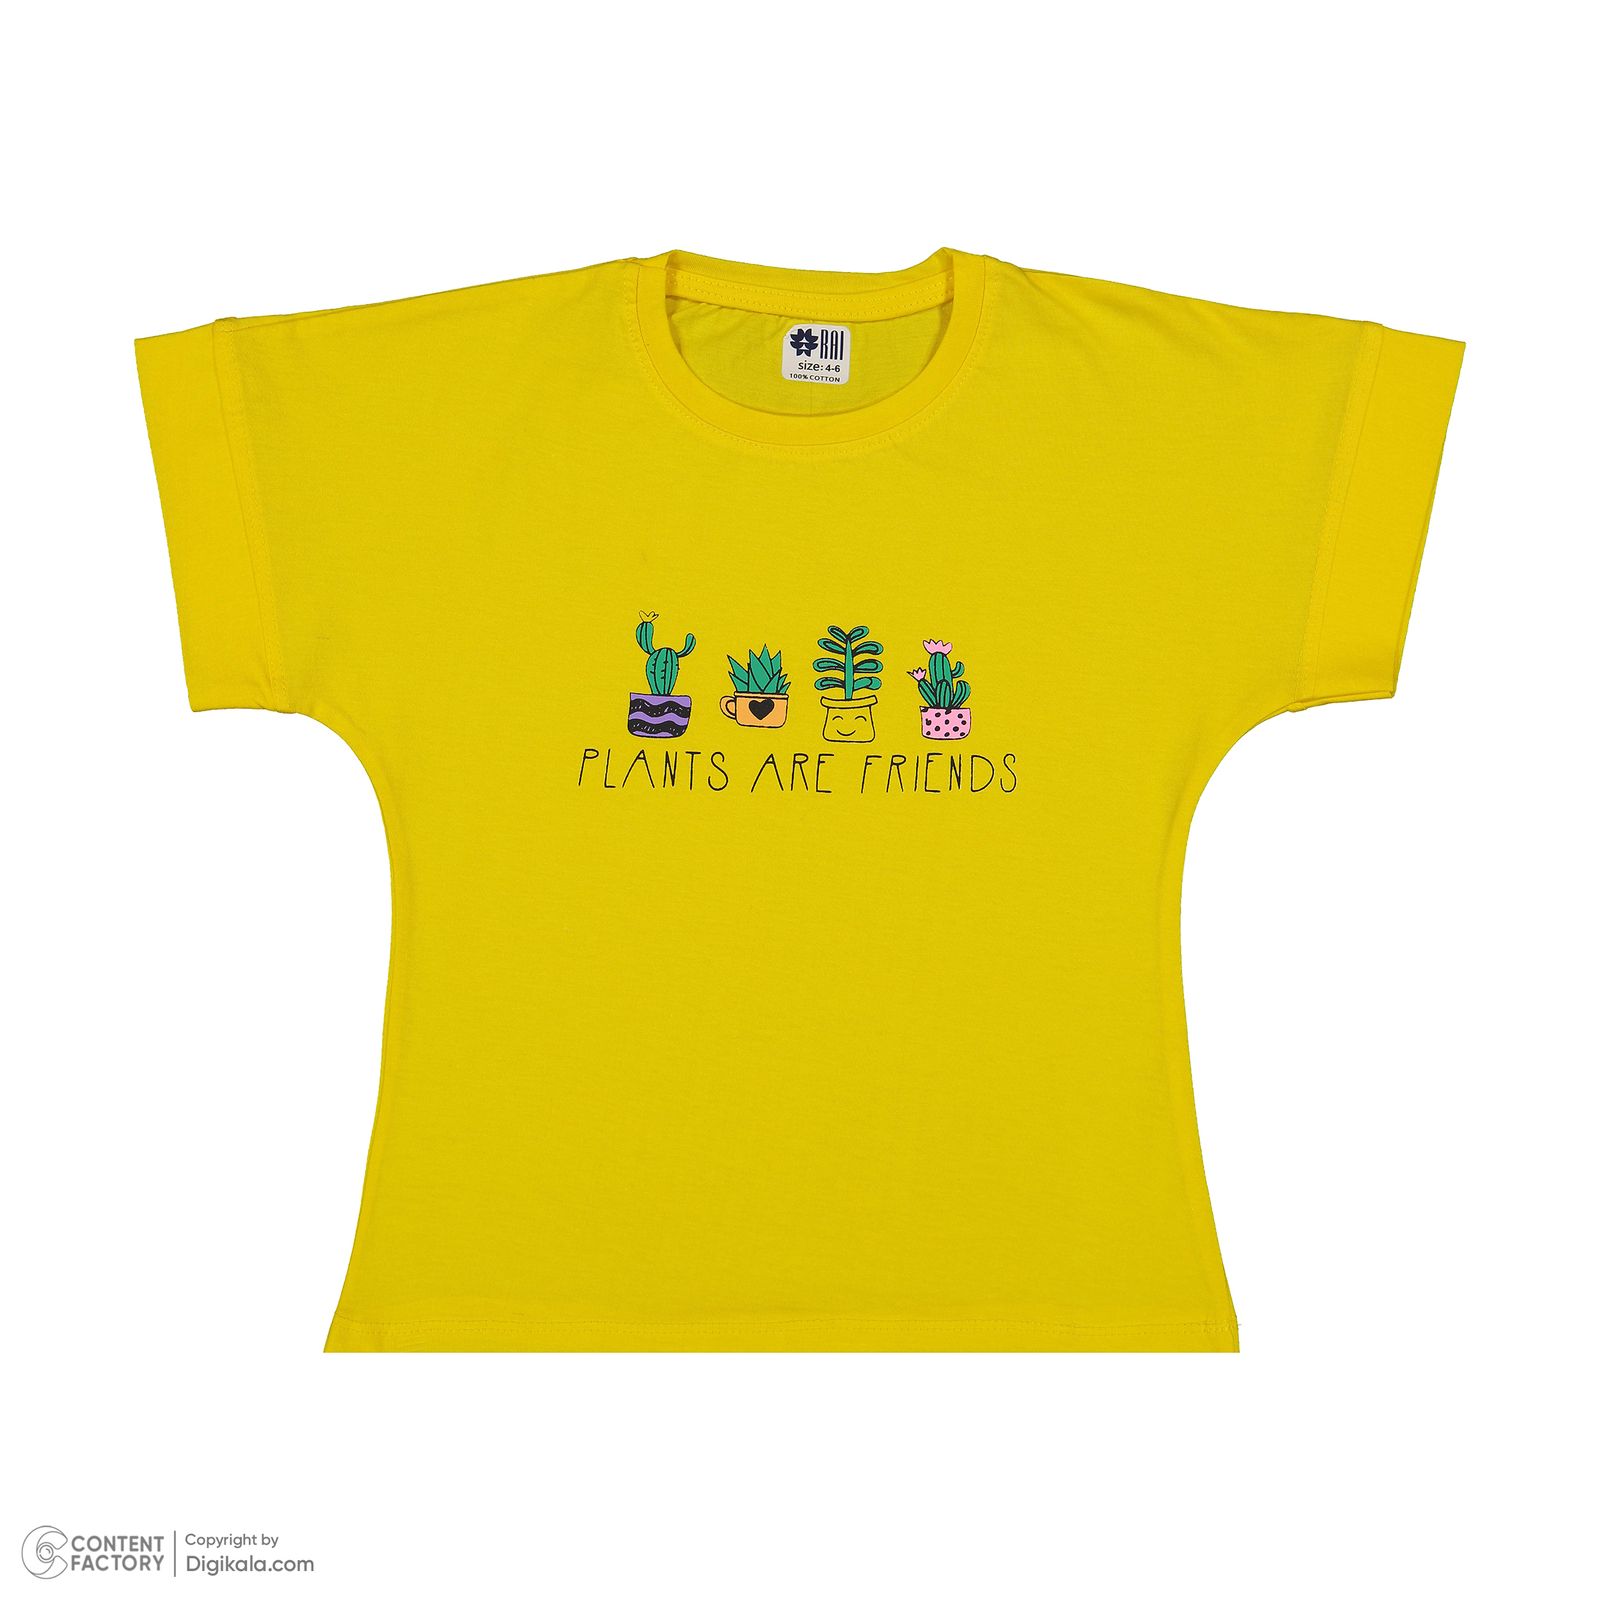 ست تی شرت آستین کوتاه و شلوارک دخترانه مادر مدل گاردن کد 92-16 رنگ زرد -  - 4